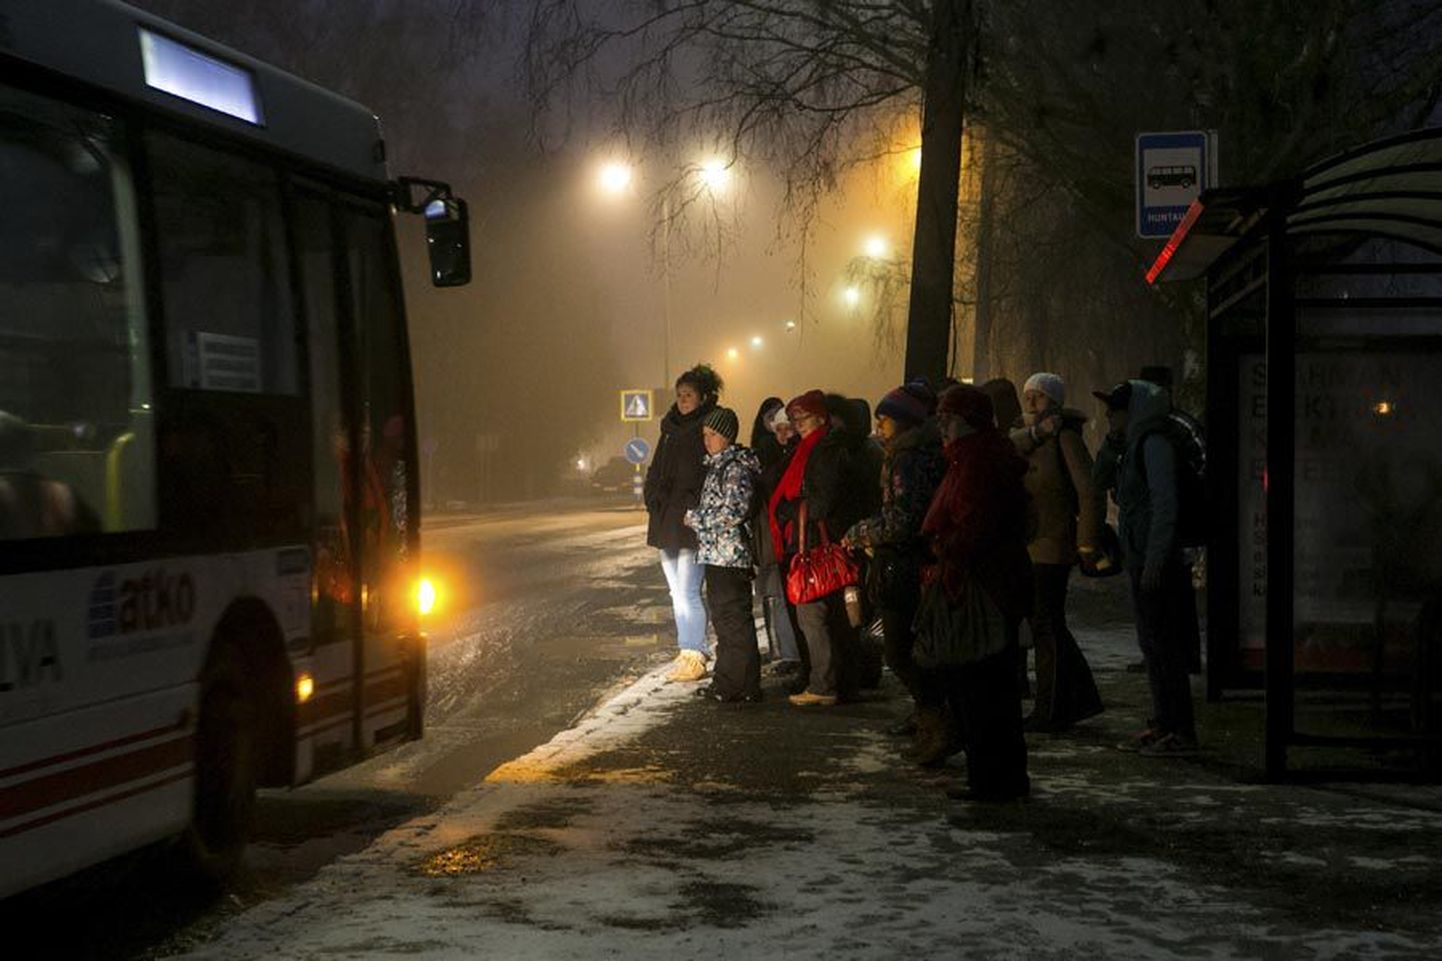 Esmaspäeval koolides algav vaheaeg jätab Viljandimaal tavapäraselt käigust ära õpilastega seotud liinibusse.